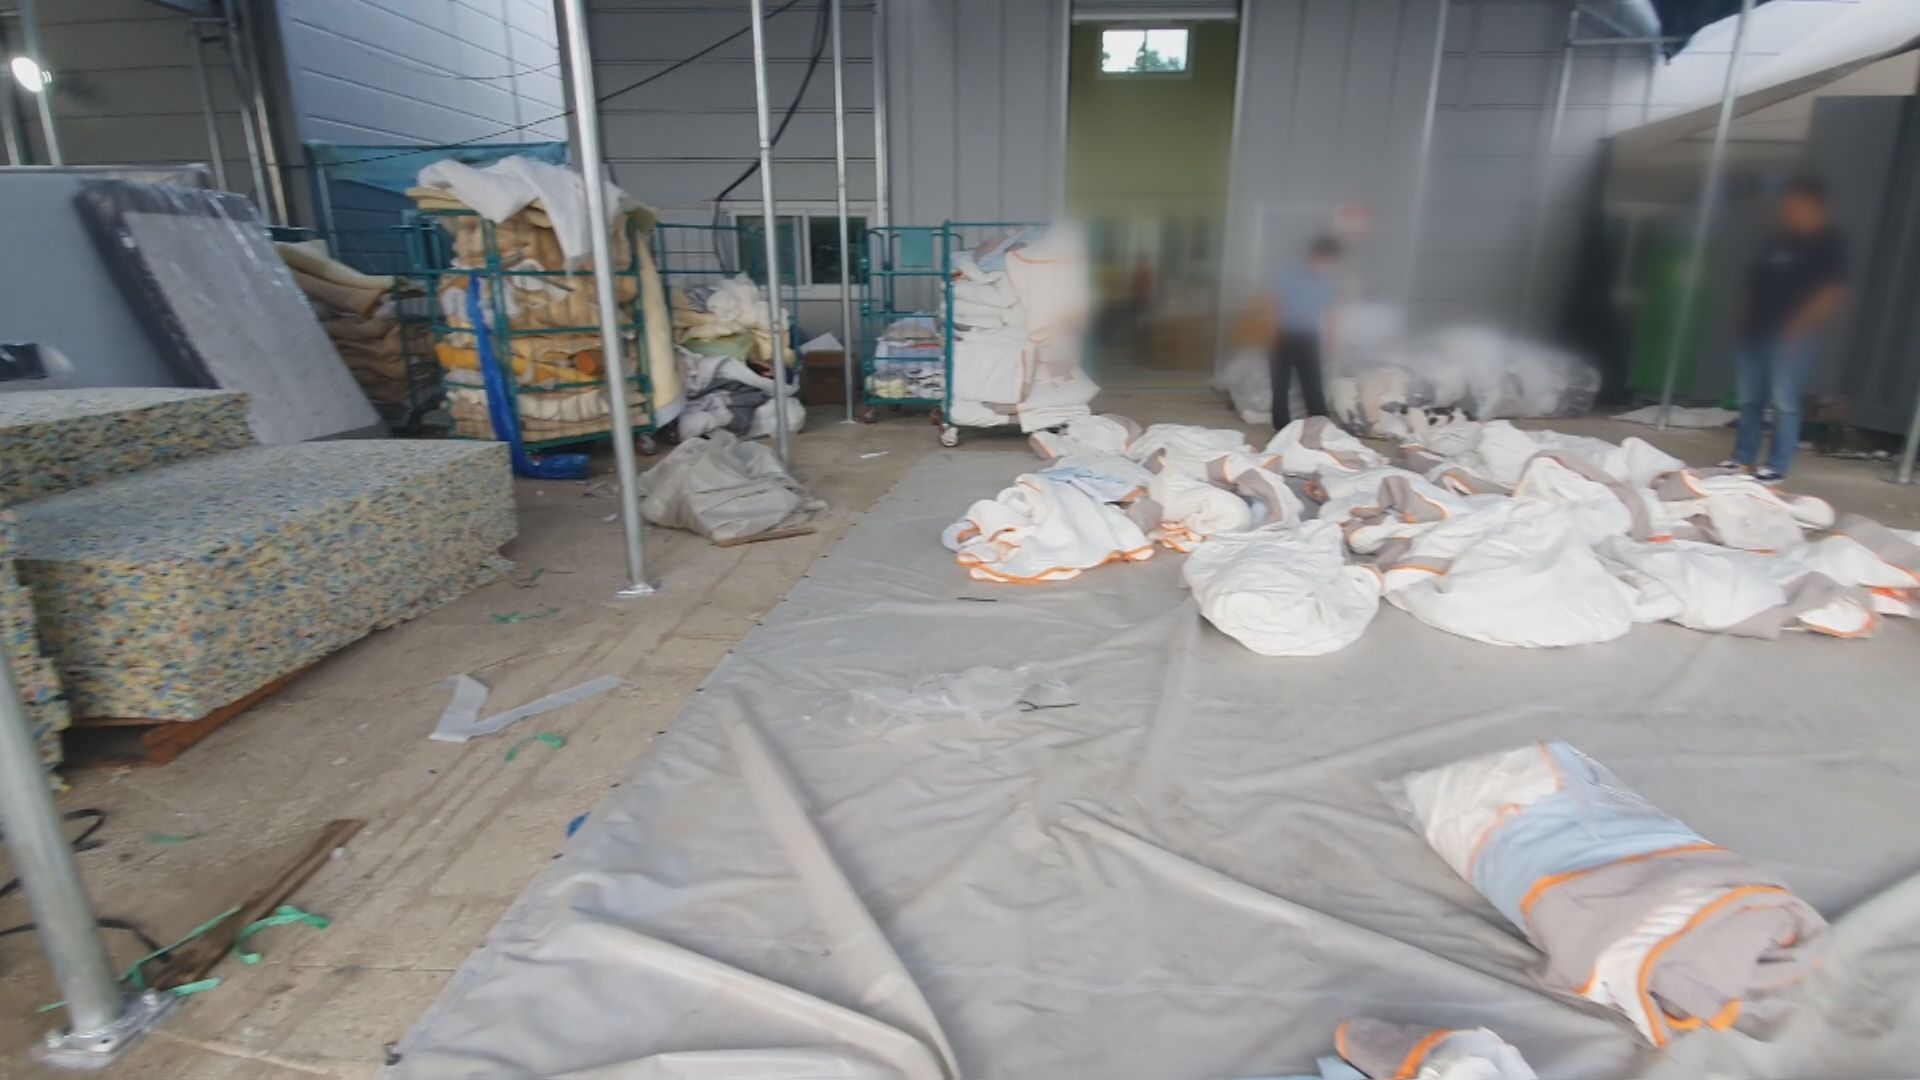 단속에 적발된 침대 매트리스 공장 내부. 중국에서 만든 가짜 커버가 바닥에 나뒹굴고 있다.